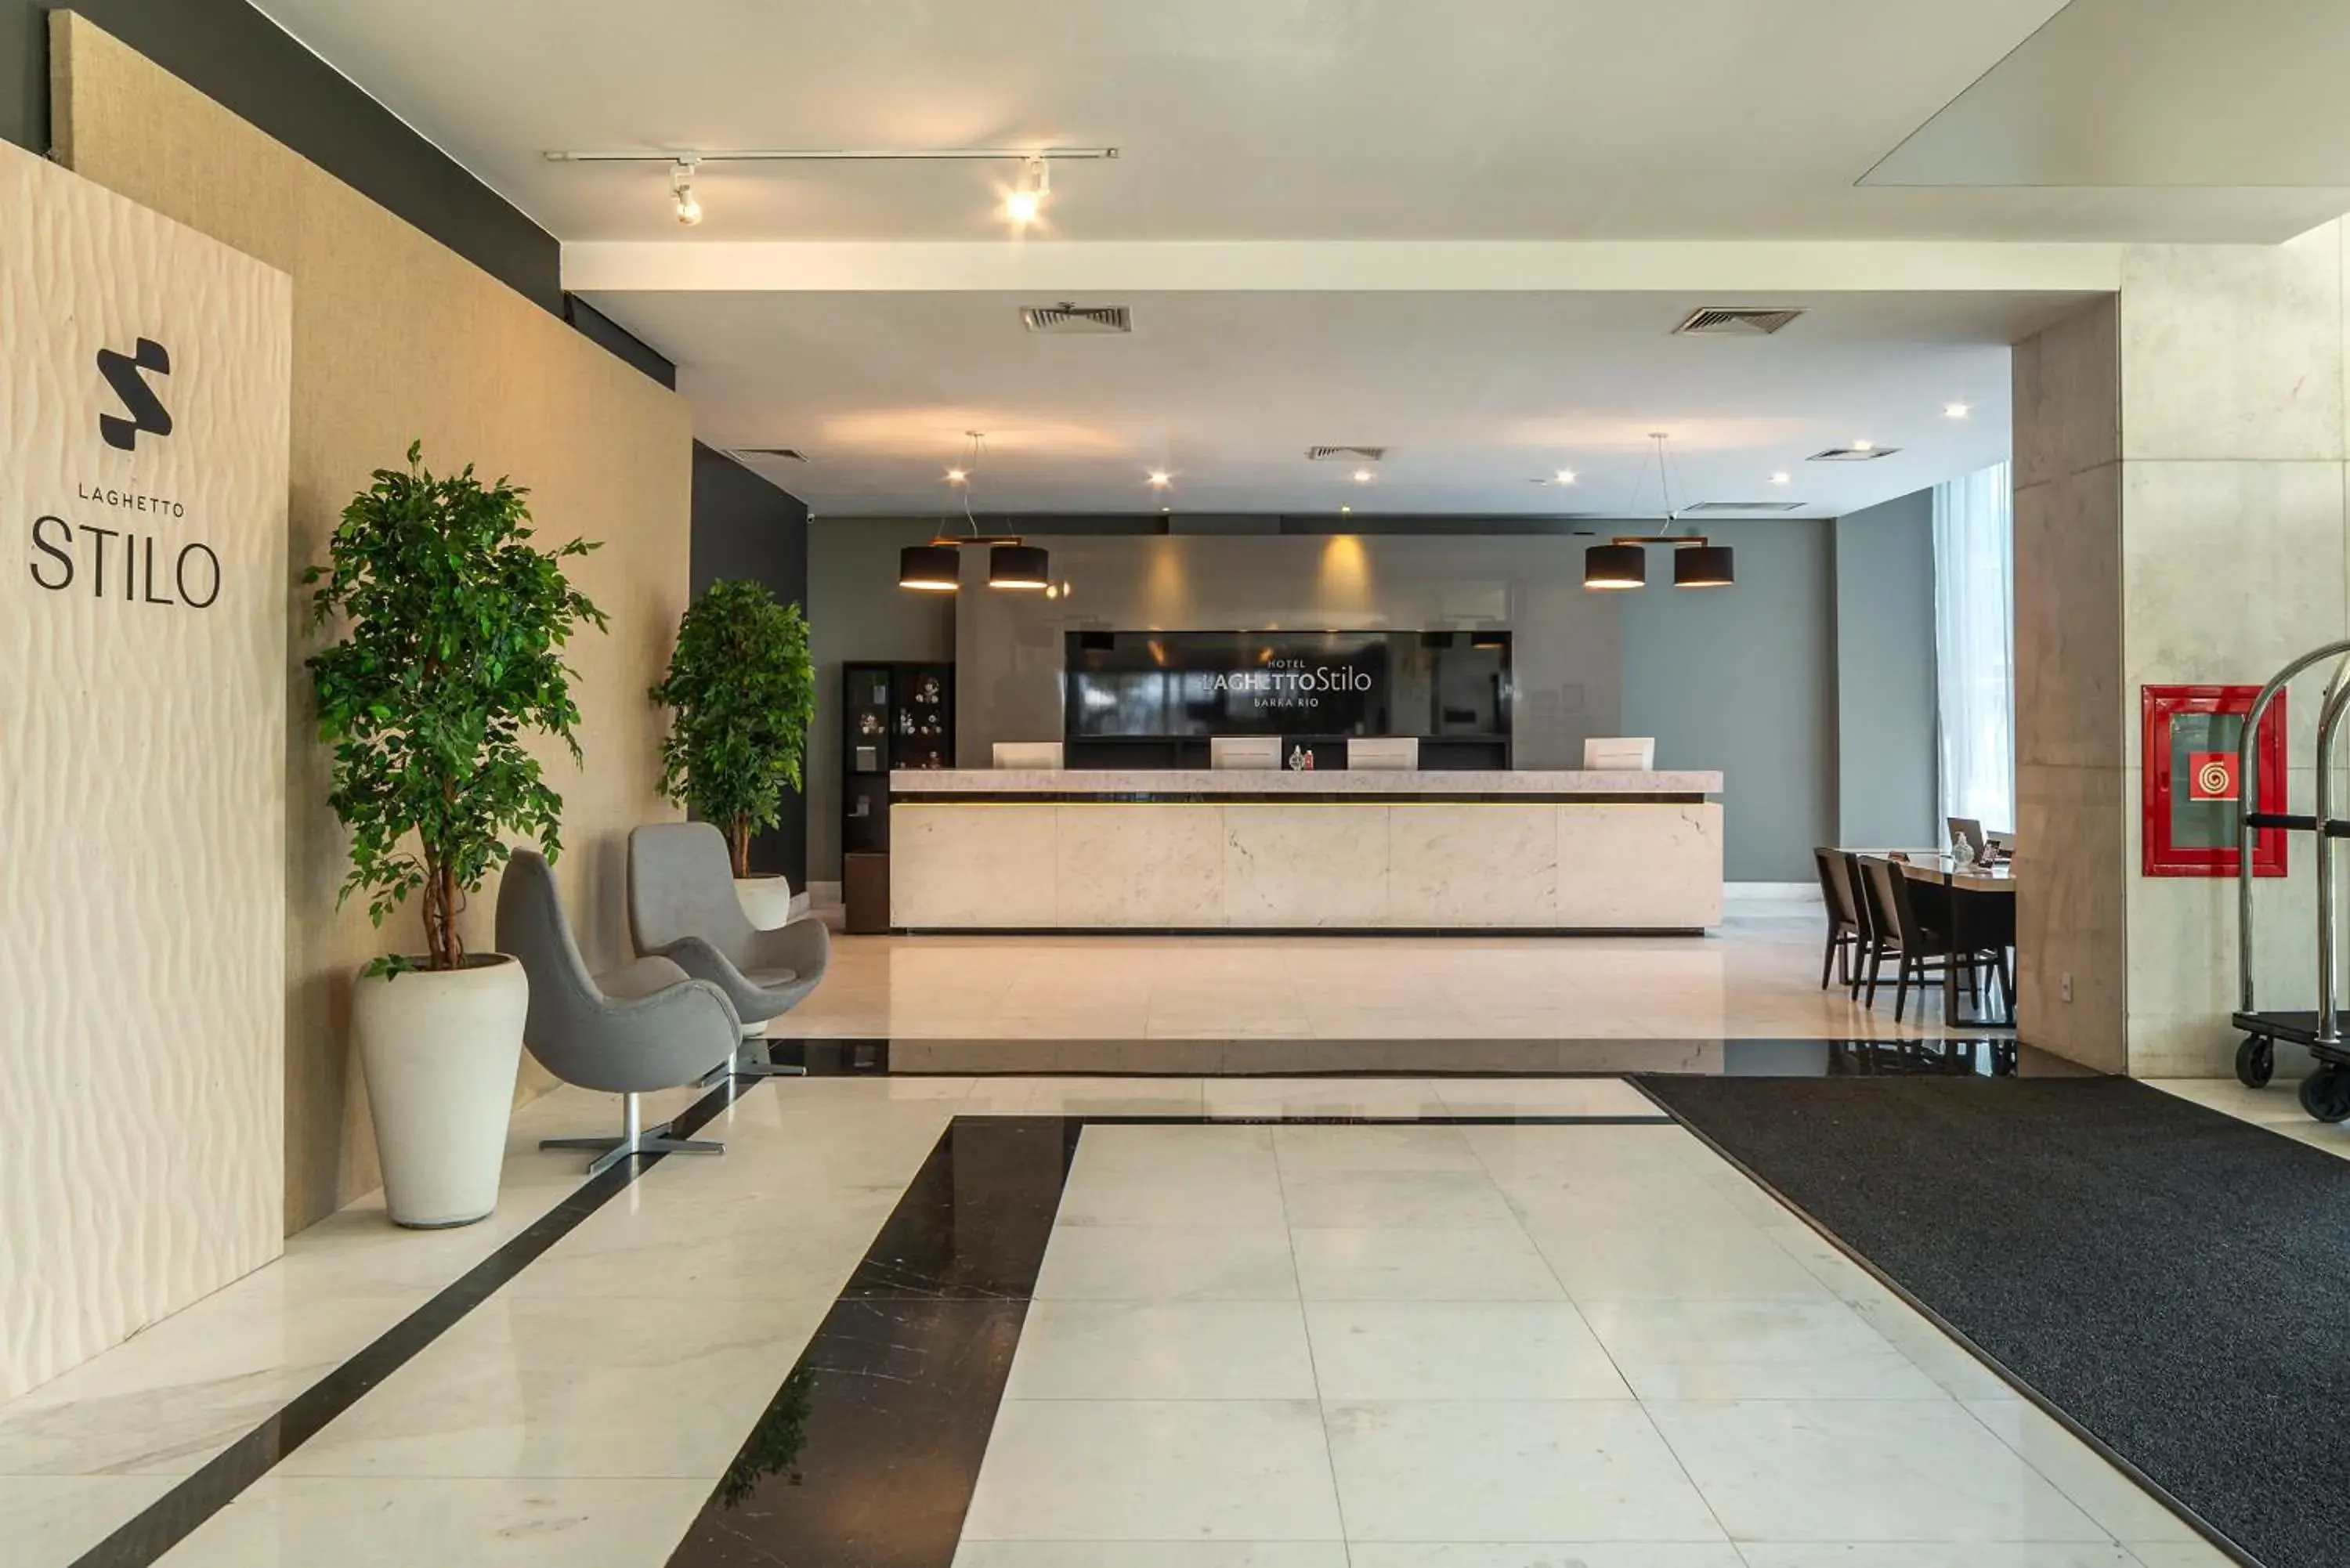 Lobby or reception in Hotel Laghetto Stilo Barra